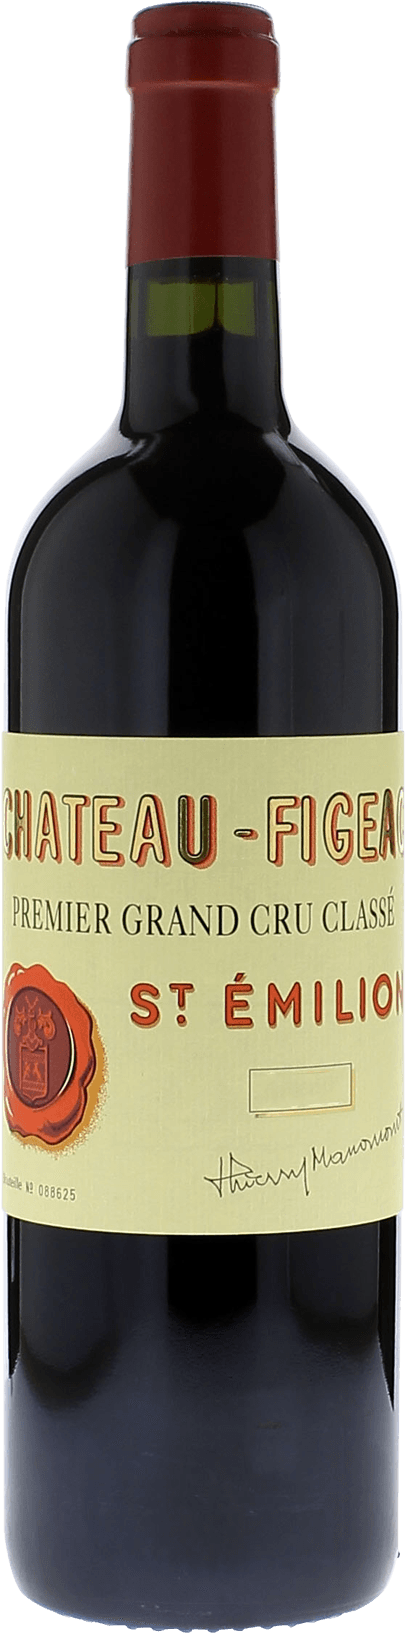 Figeac st emilion 2008 1er Grand cru B class Saint-Emilion, Bordeaux rouge